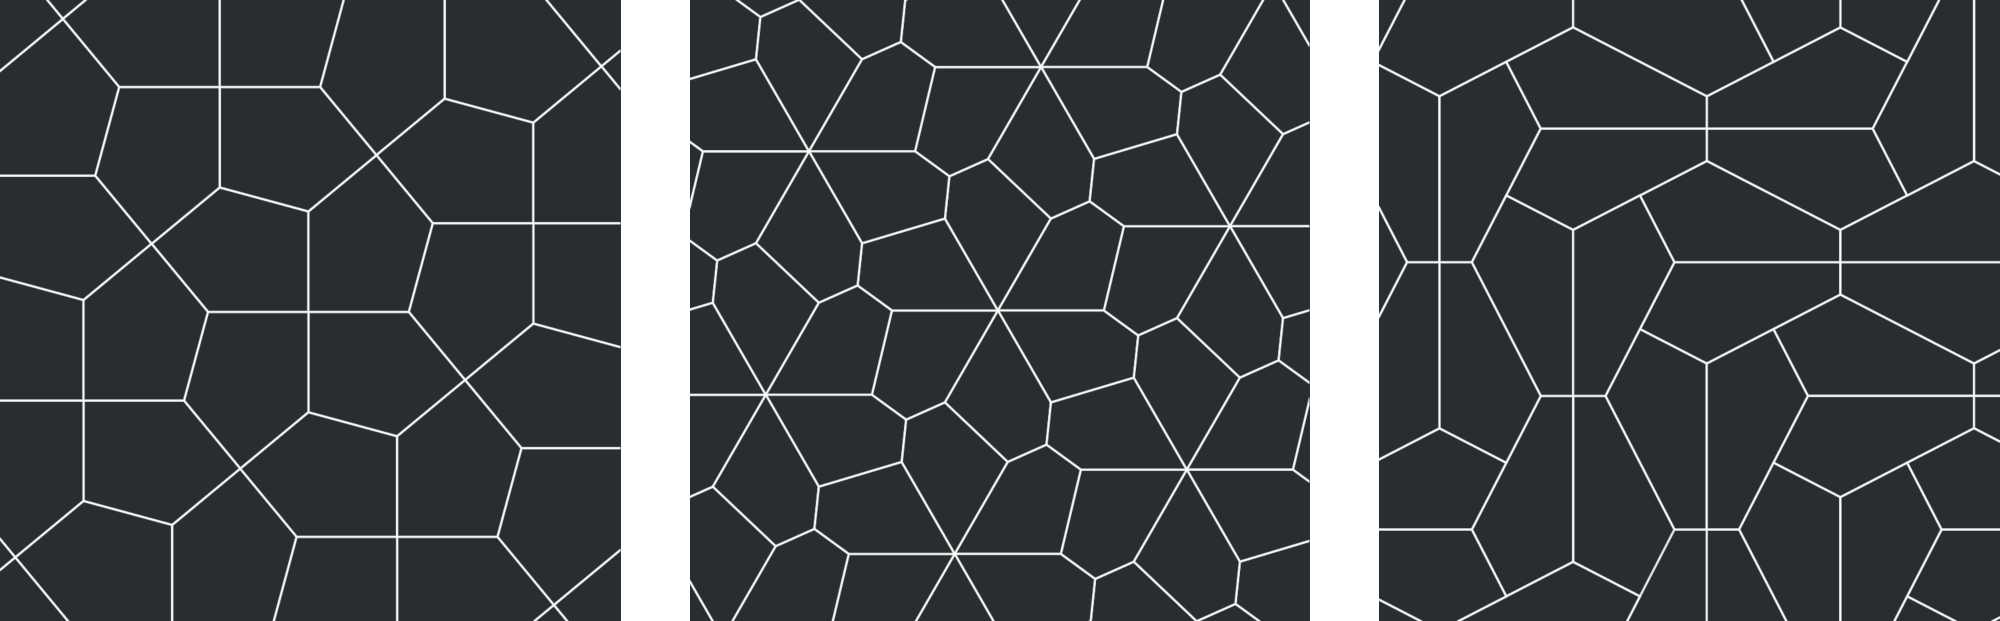 Three types of pentagonal tilings